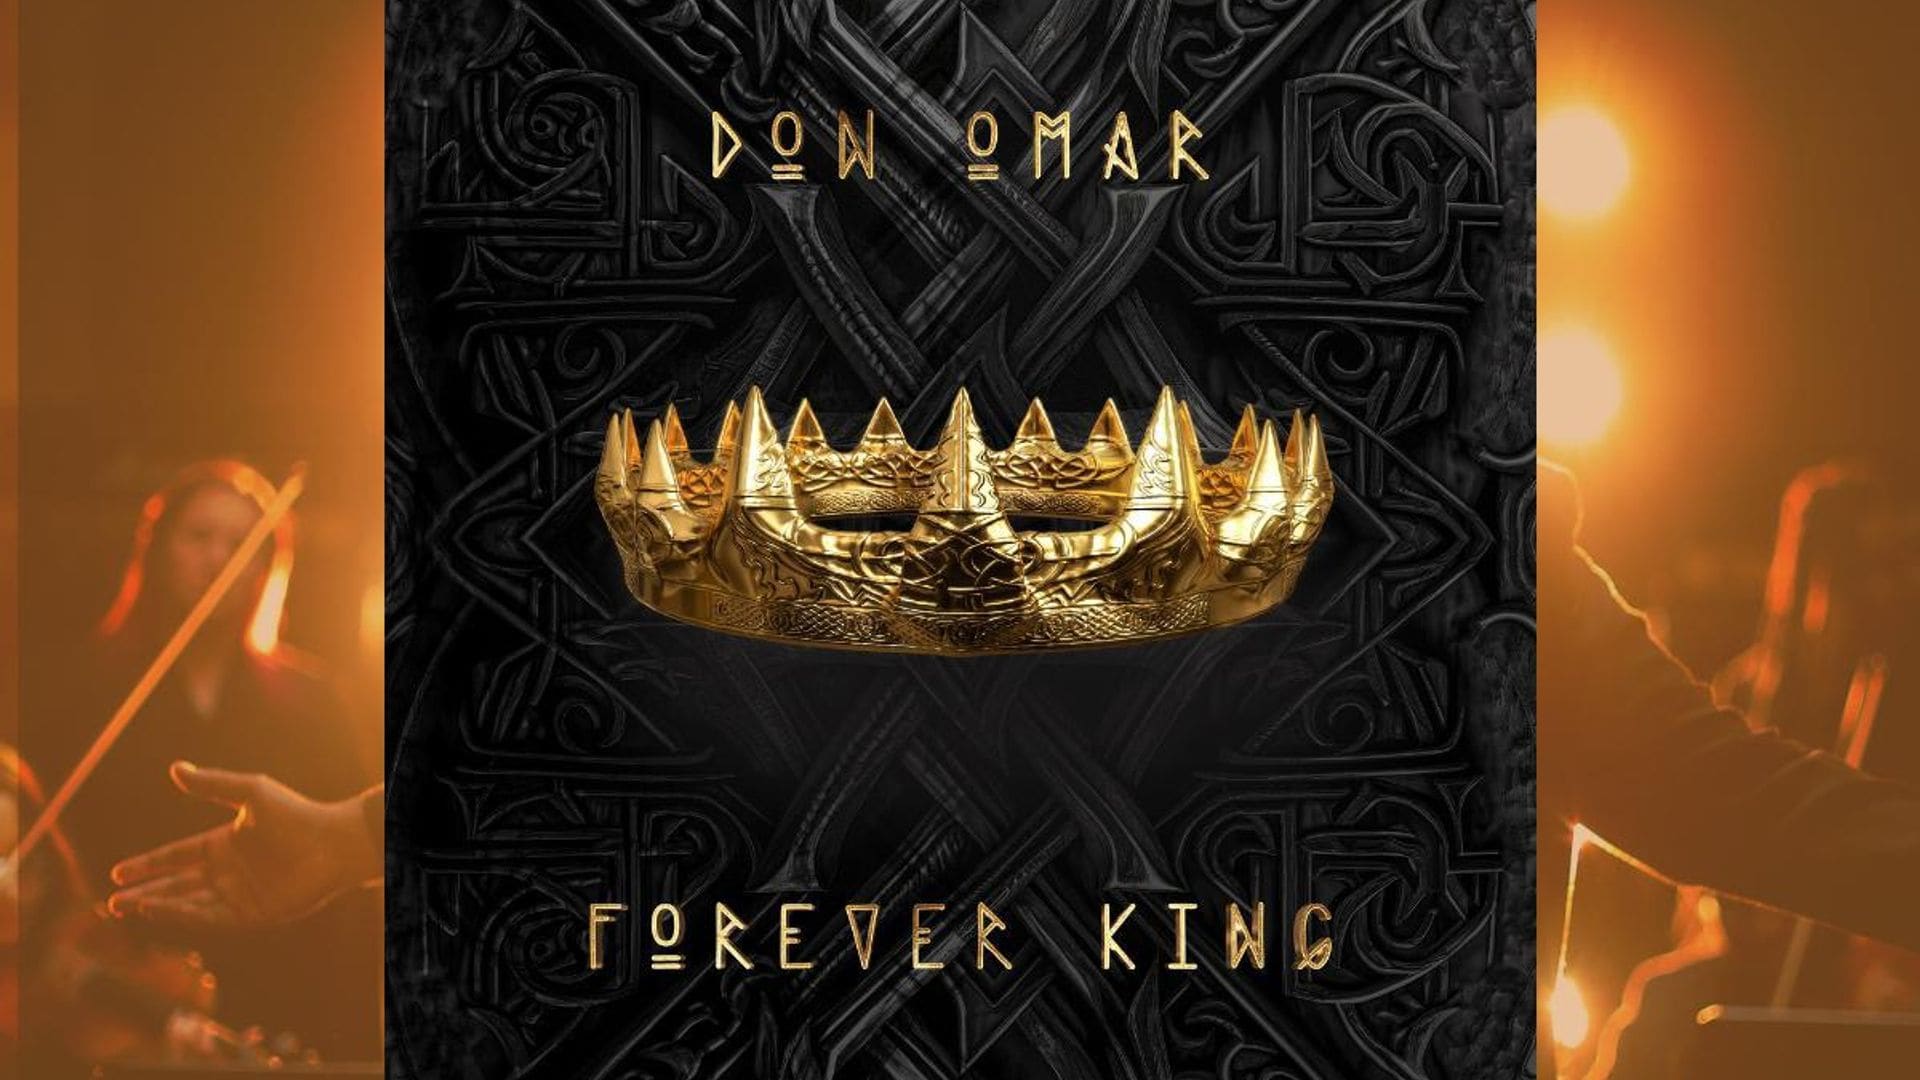 Don Omar releases his long-awaited album ‘Forever King’